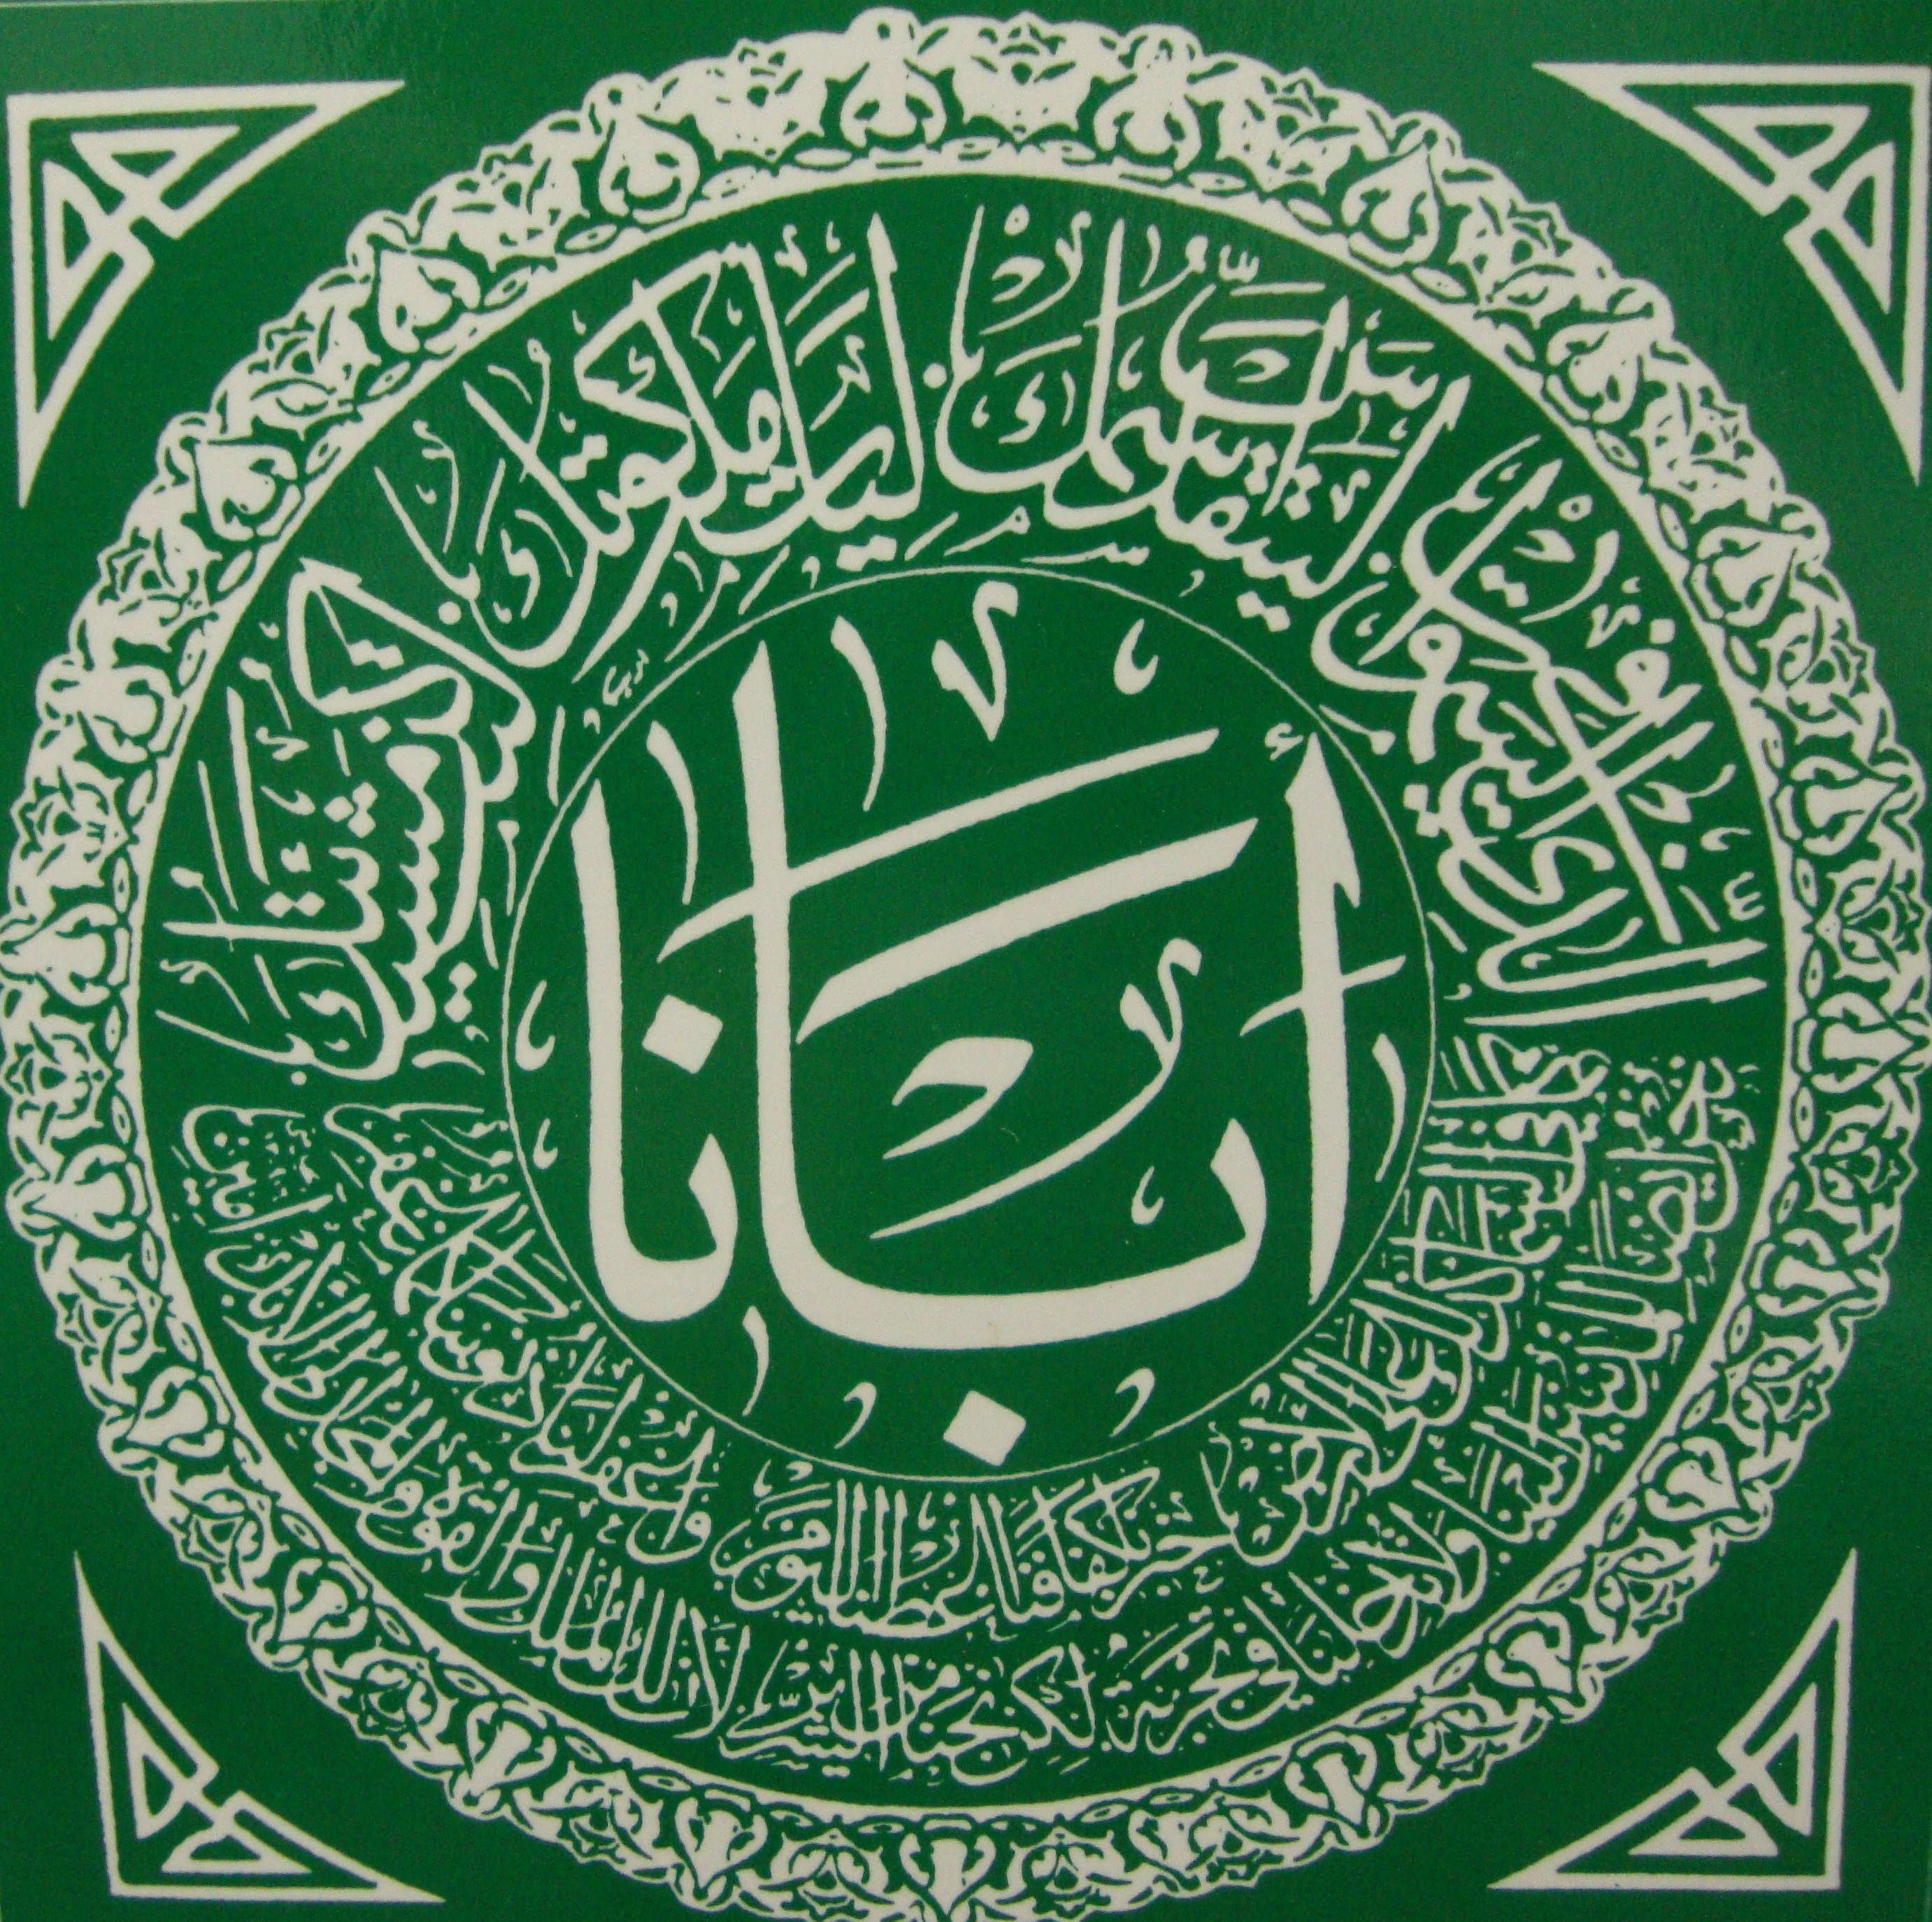 Молитва на арабском. Мусульманские молитвы на стену. Мусульманские молитвы на арабском языке. Молитва мусульман на арабском.